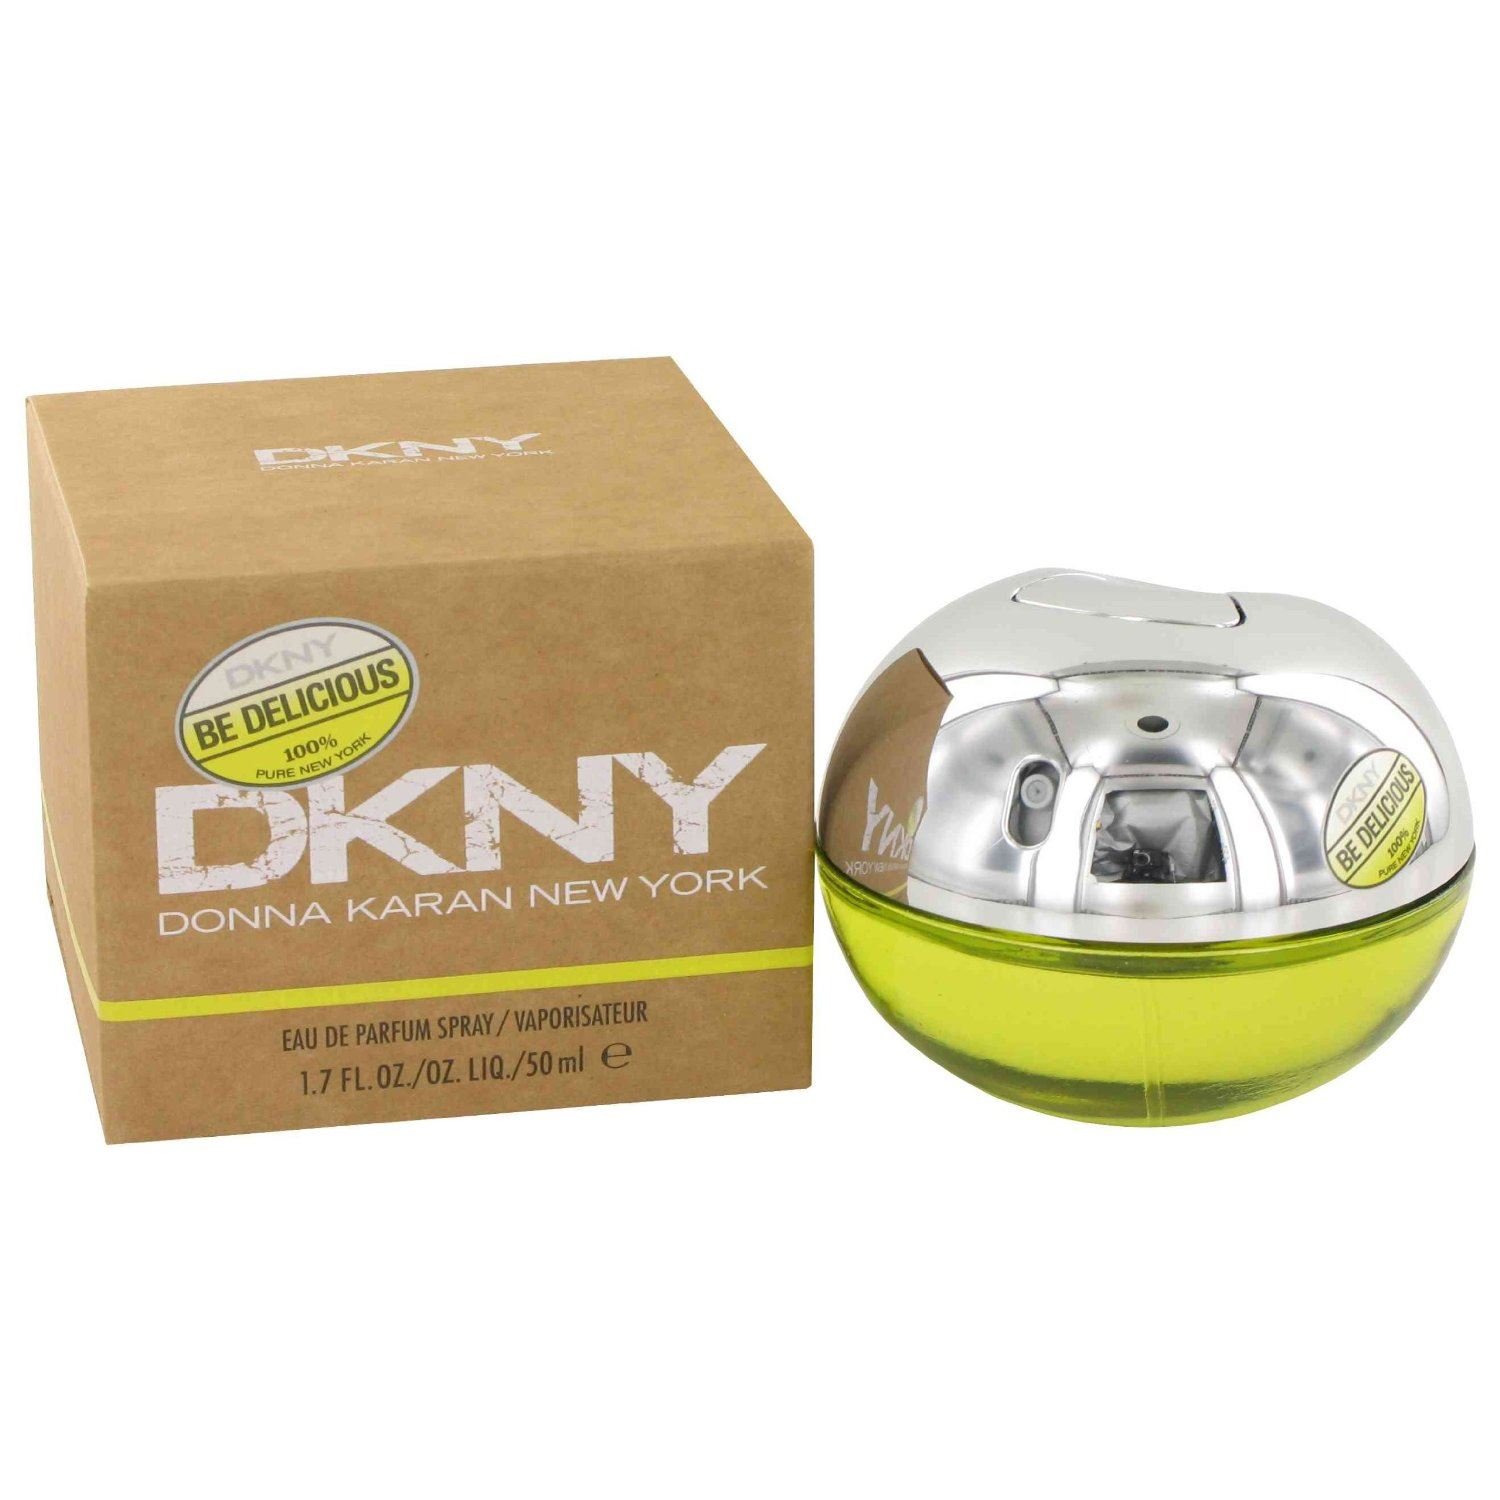 overliggende skille sig ud hvordan DKNY Donna Karan New York Eau De Parfum Spray Vapourisateur 100ML reviews